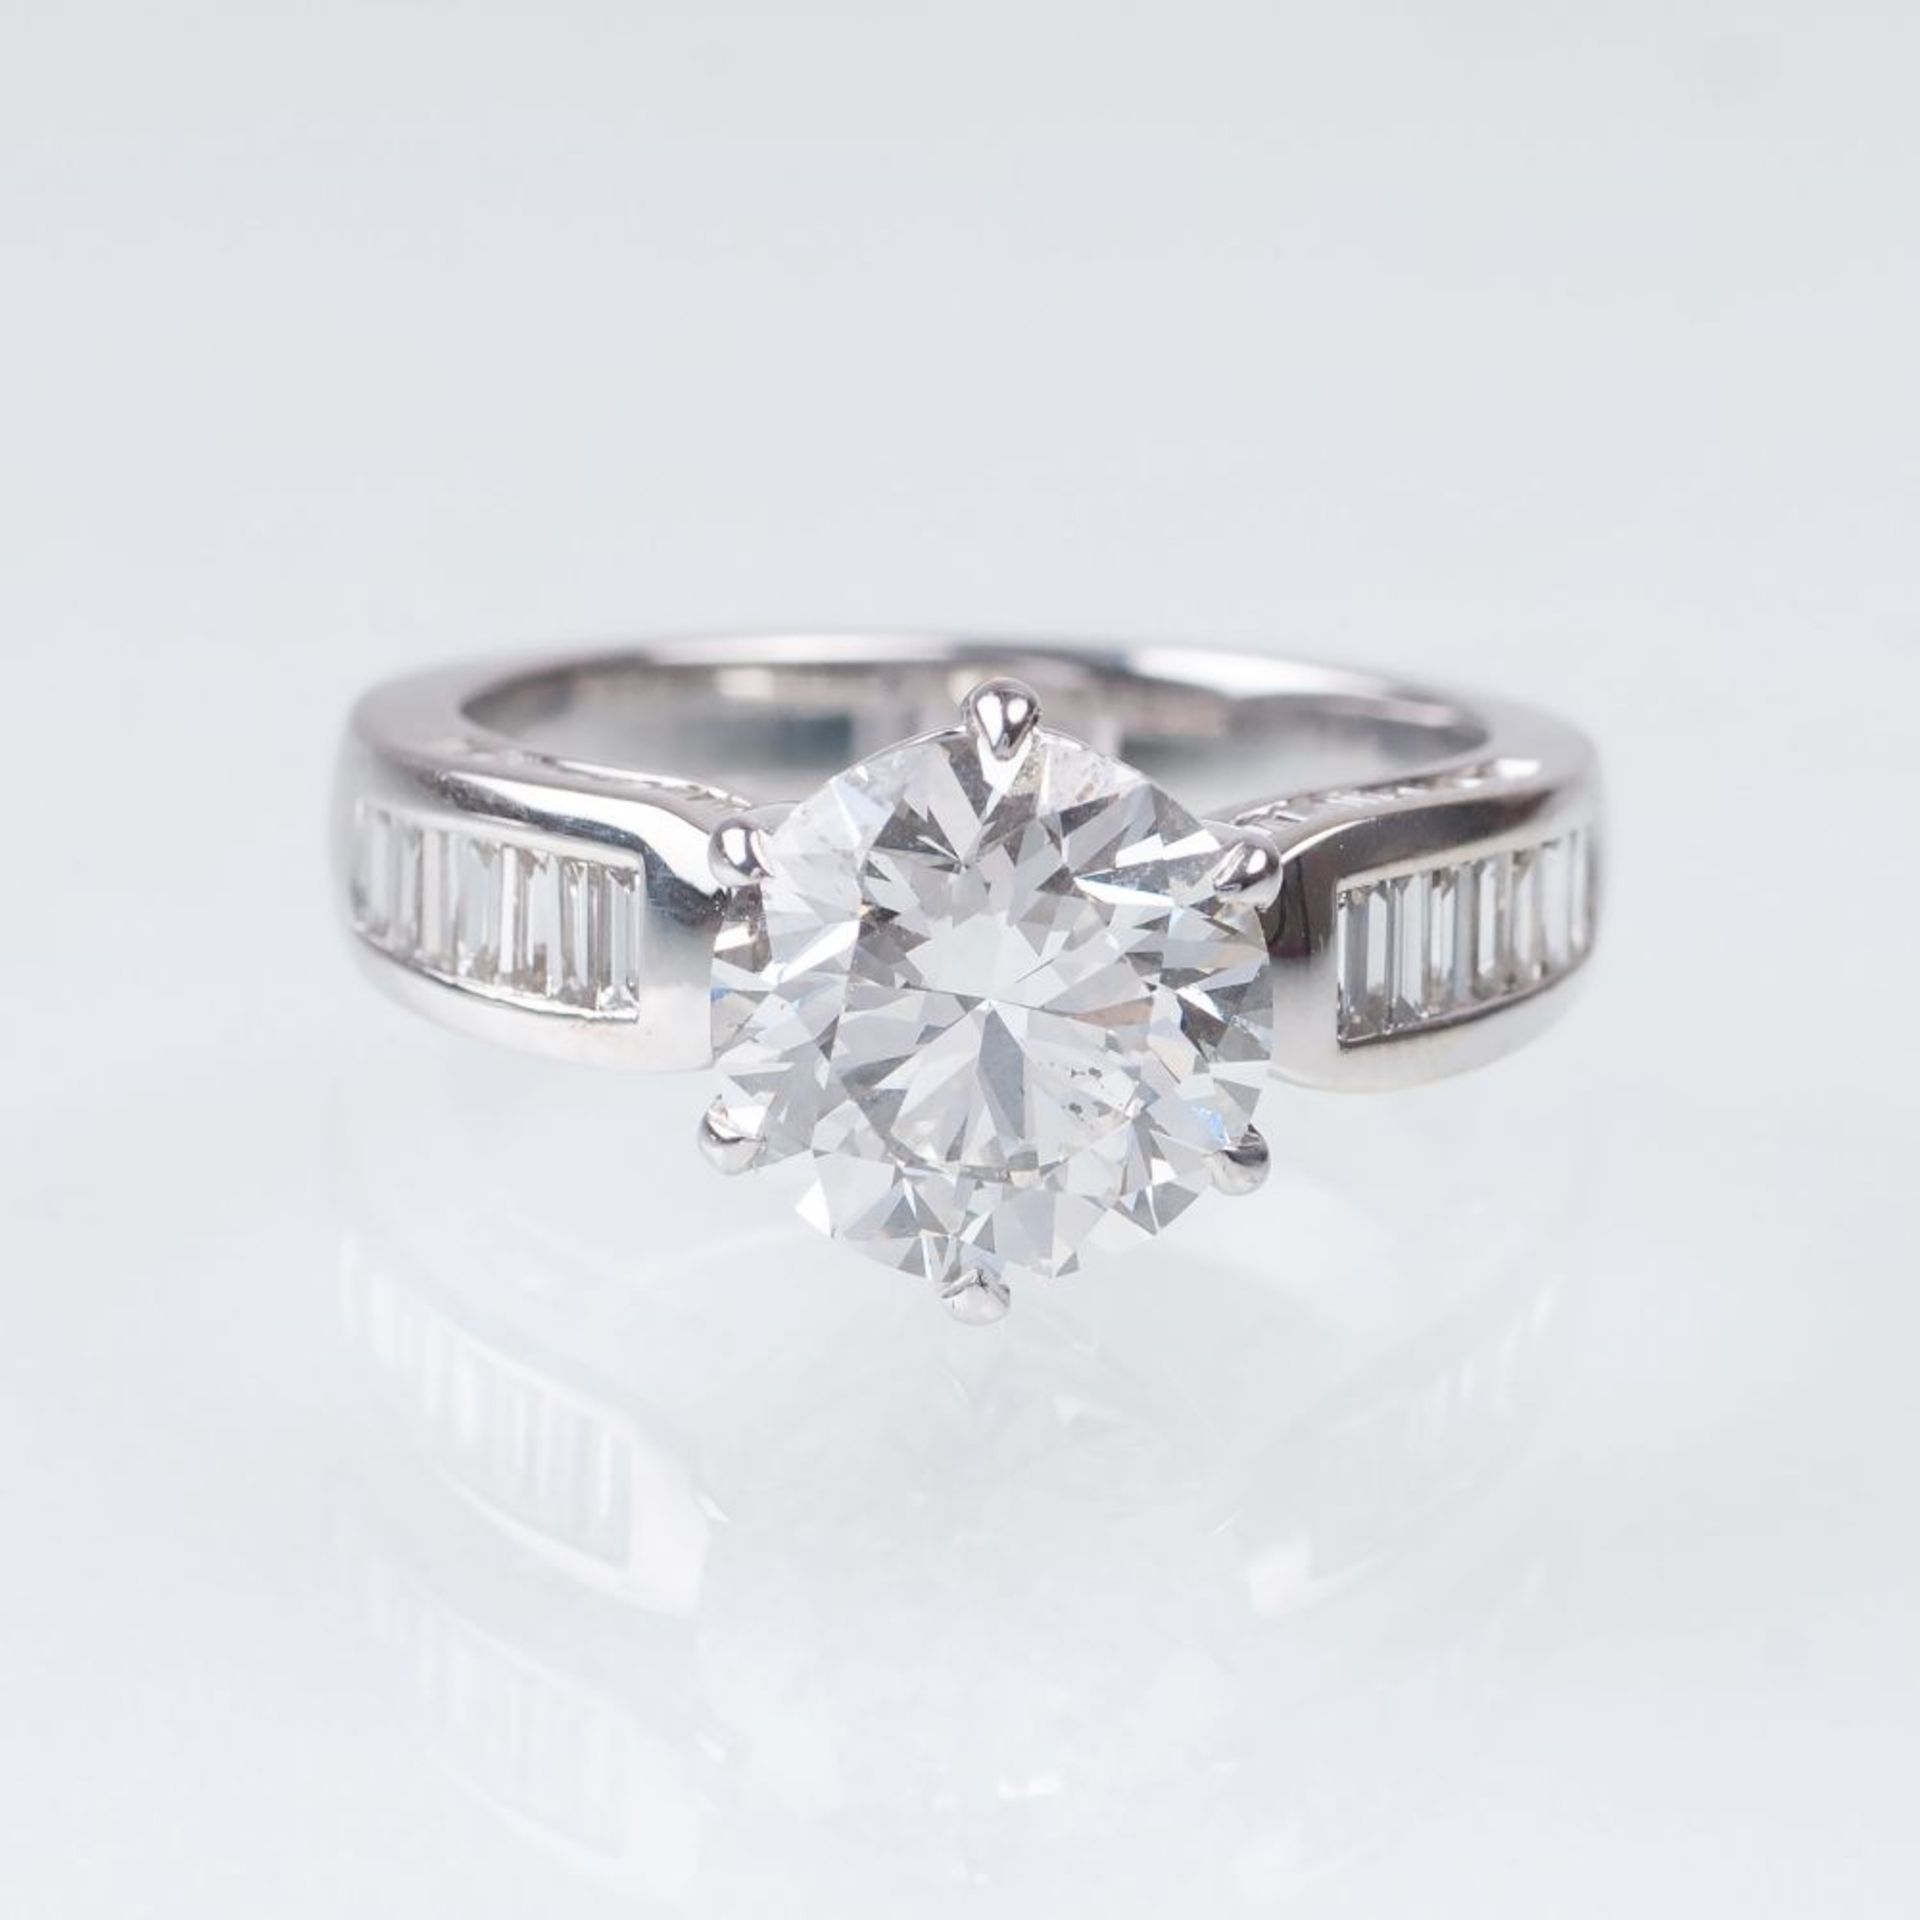 Diamant-Ring mit Solitär. 18 kt. WG, gest. In sechsfacher Krappenfassung der Solitär im - Image 2 of 2